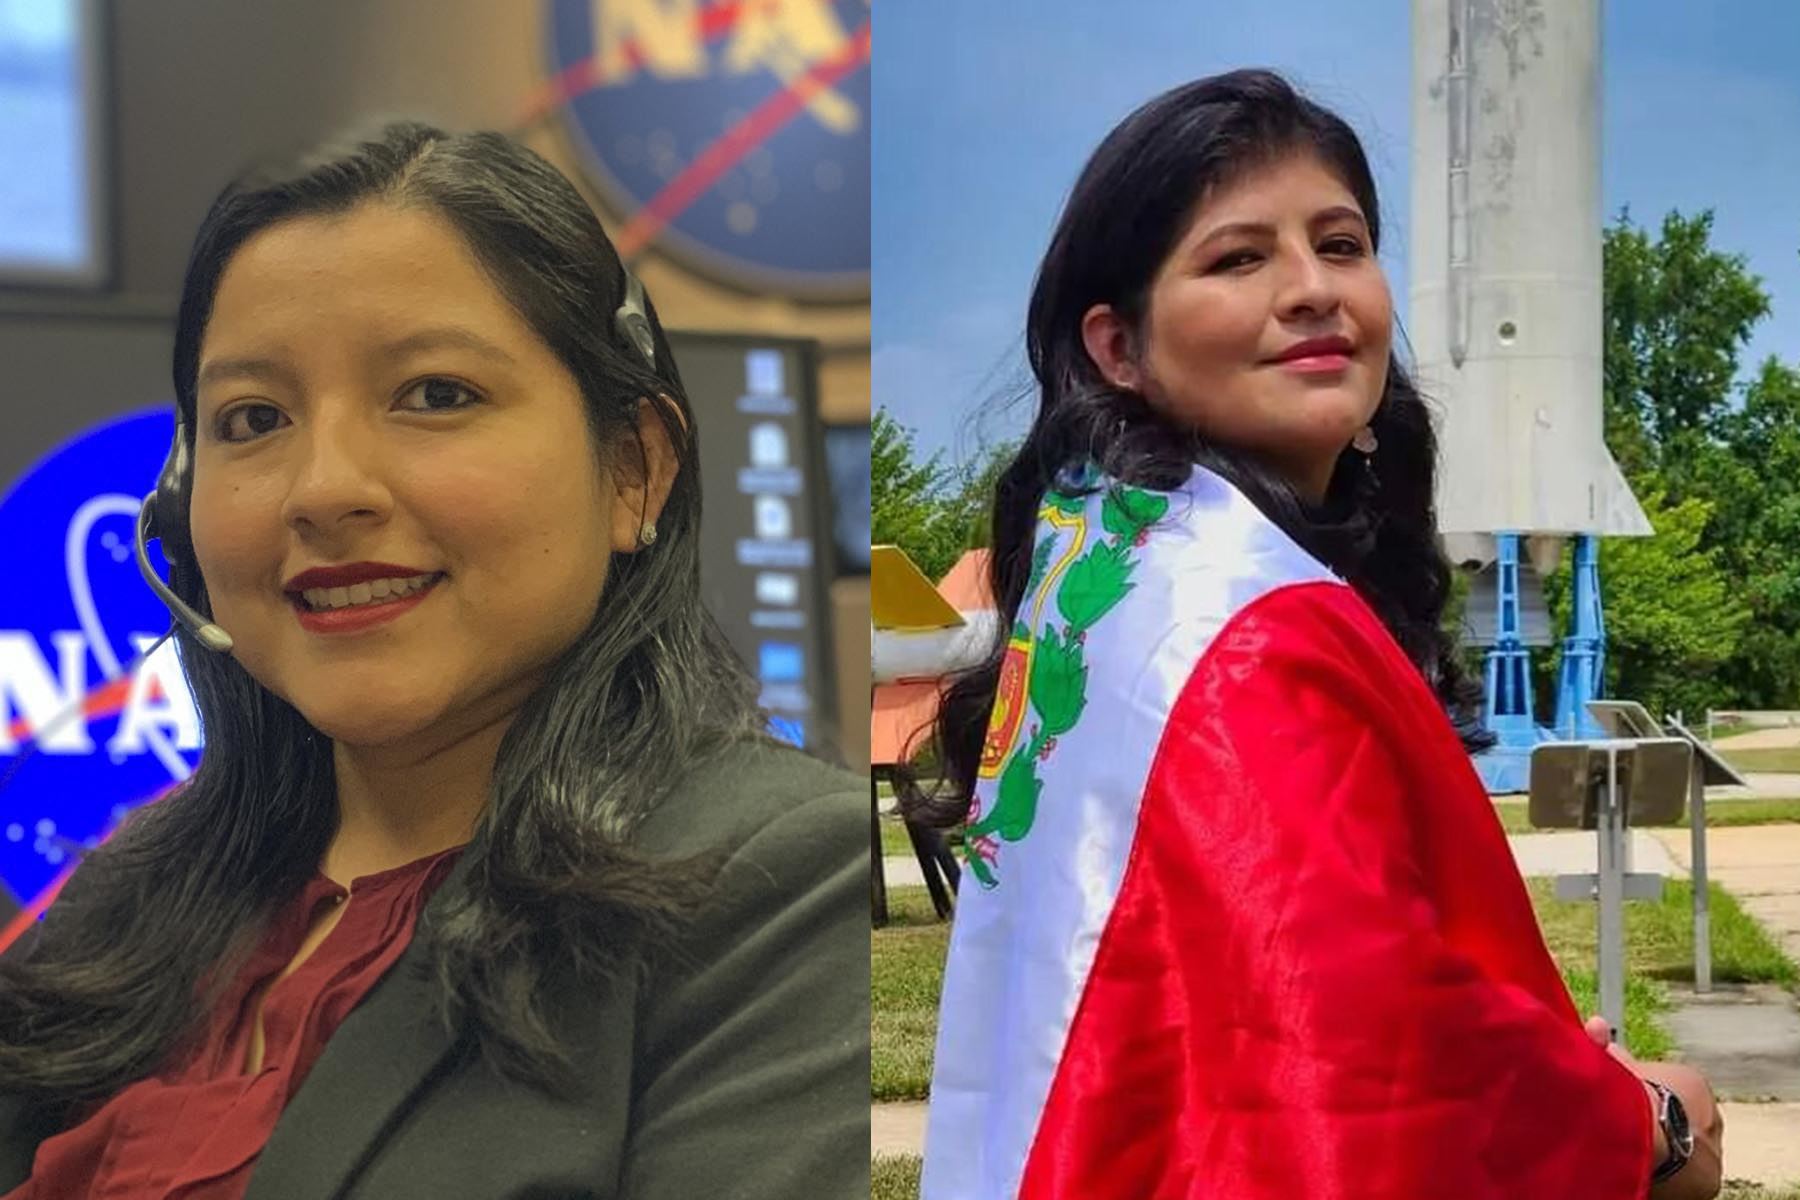 Las ingenieras peruanas Rosa Ávalos-Warren y Aracely Quispe Neira trabajan en la NASA y se han convertido en inspiración de las generaciones más jóvenes.